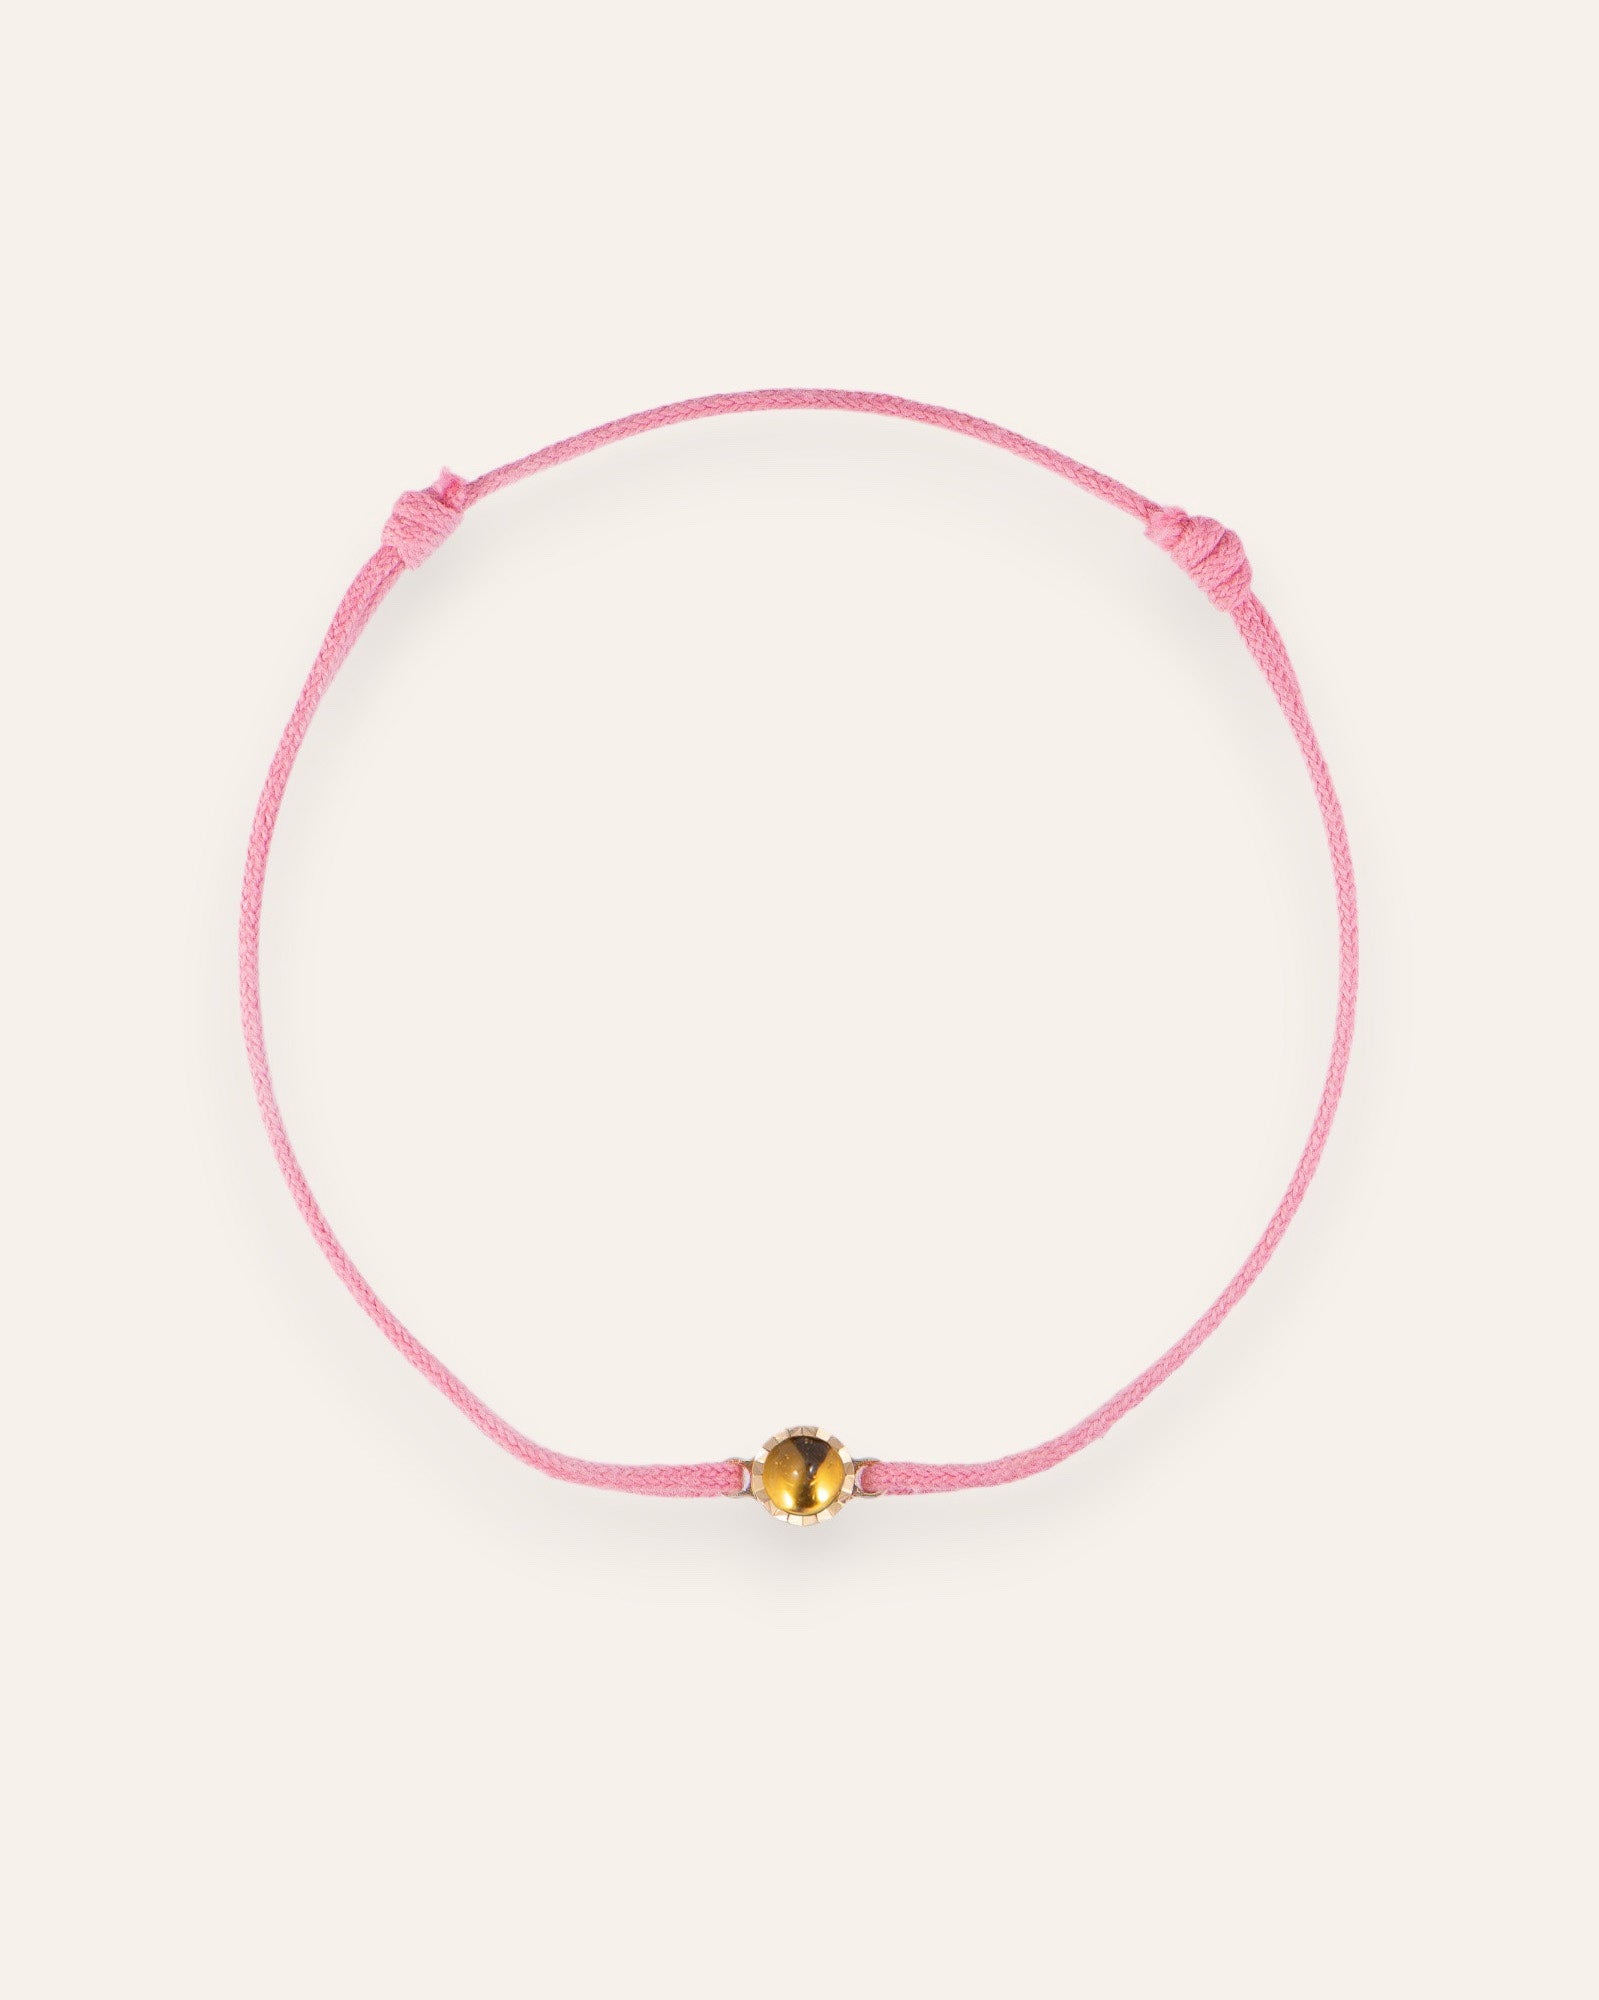 Solitaire cord bracelet